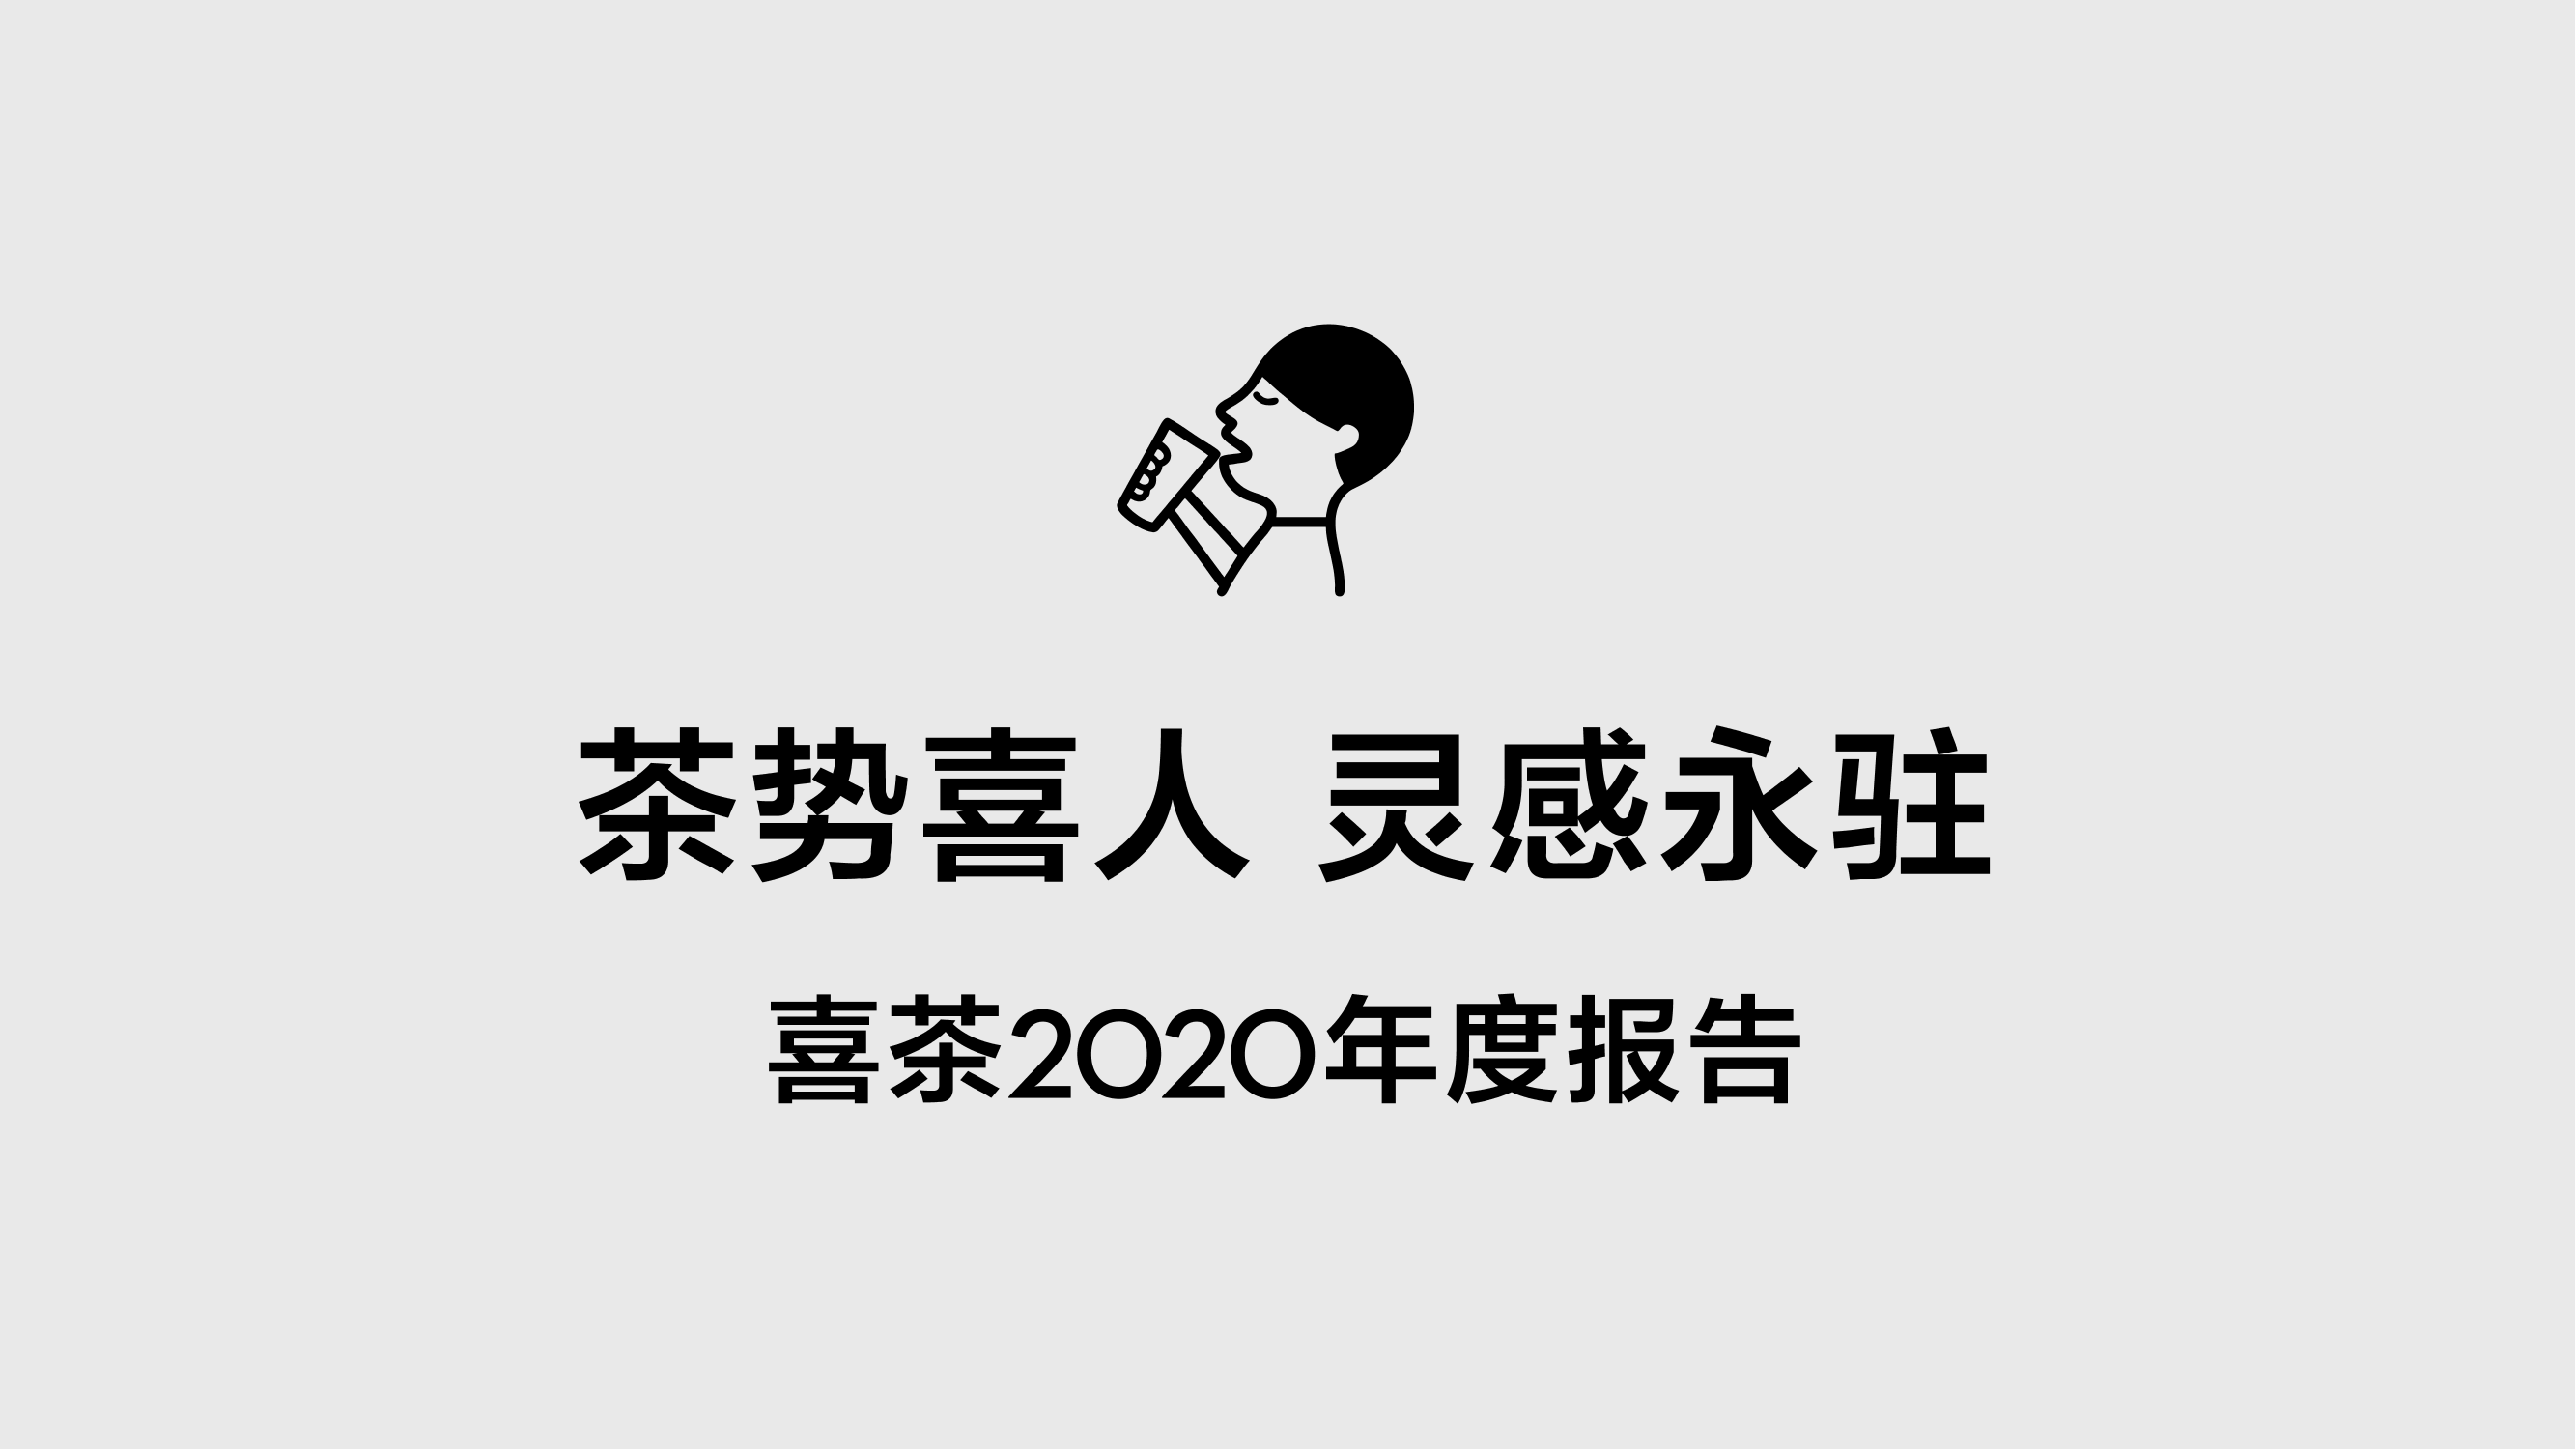 喜茶2020年度报告-2021-45页喜茶2020年度报告-2021-45页_1.png